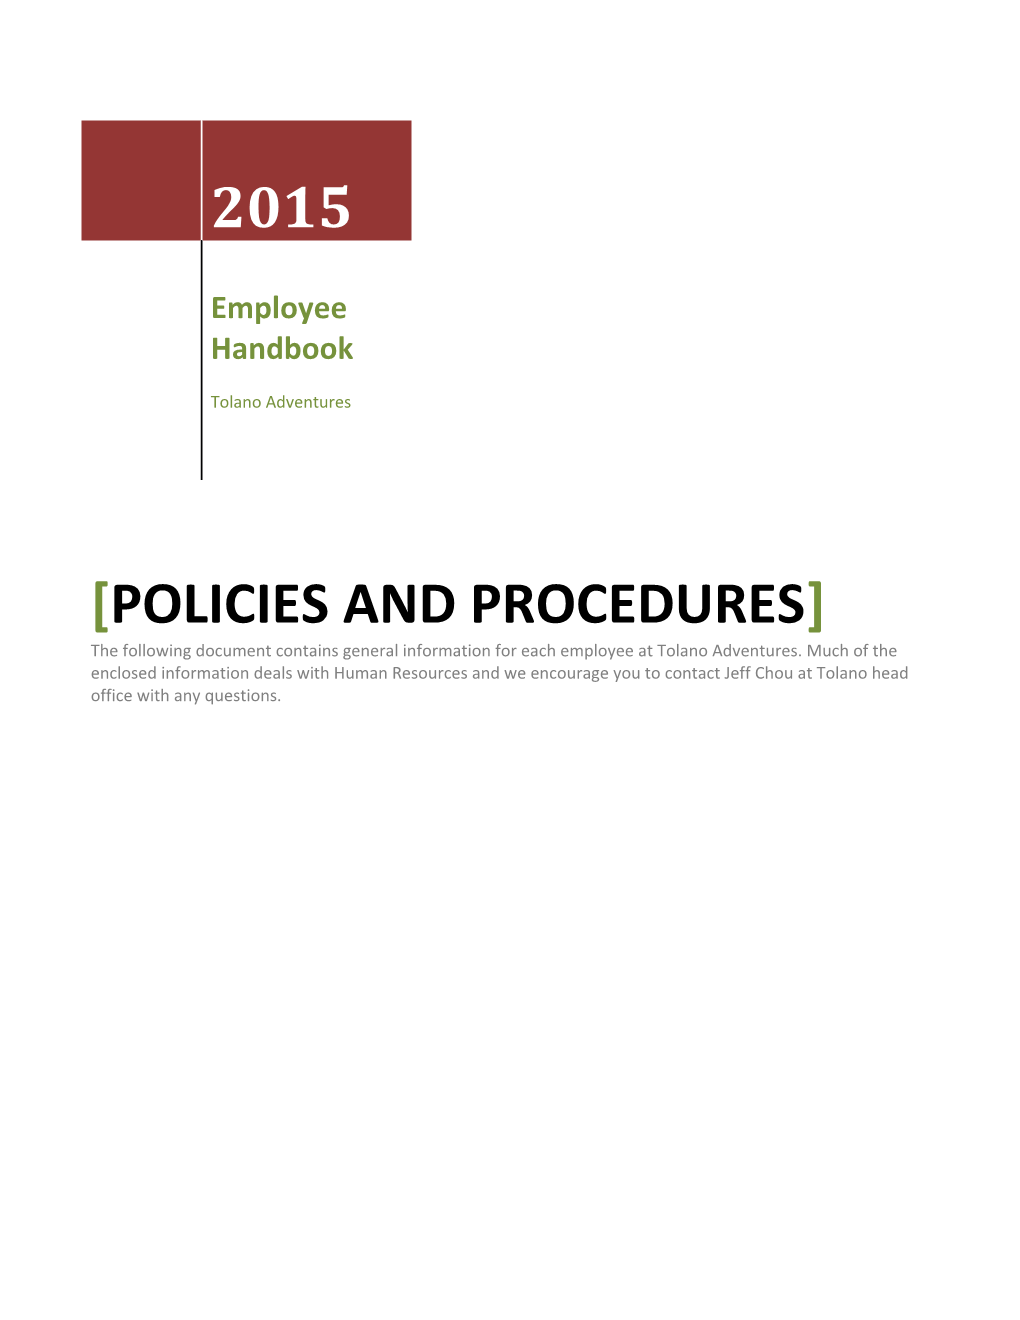 Policies and Procedures s11